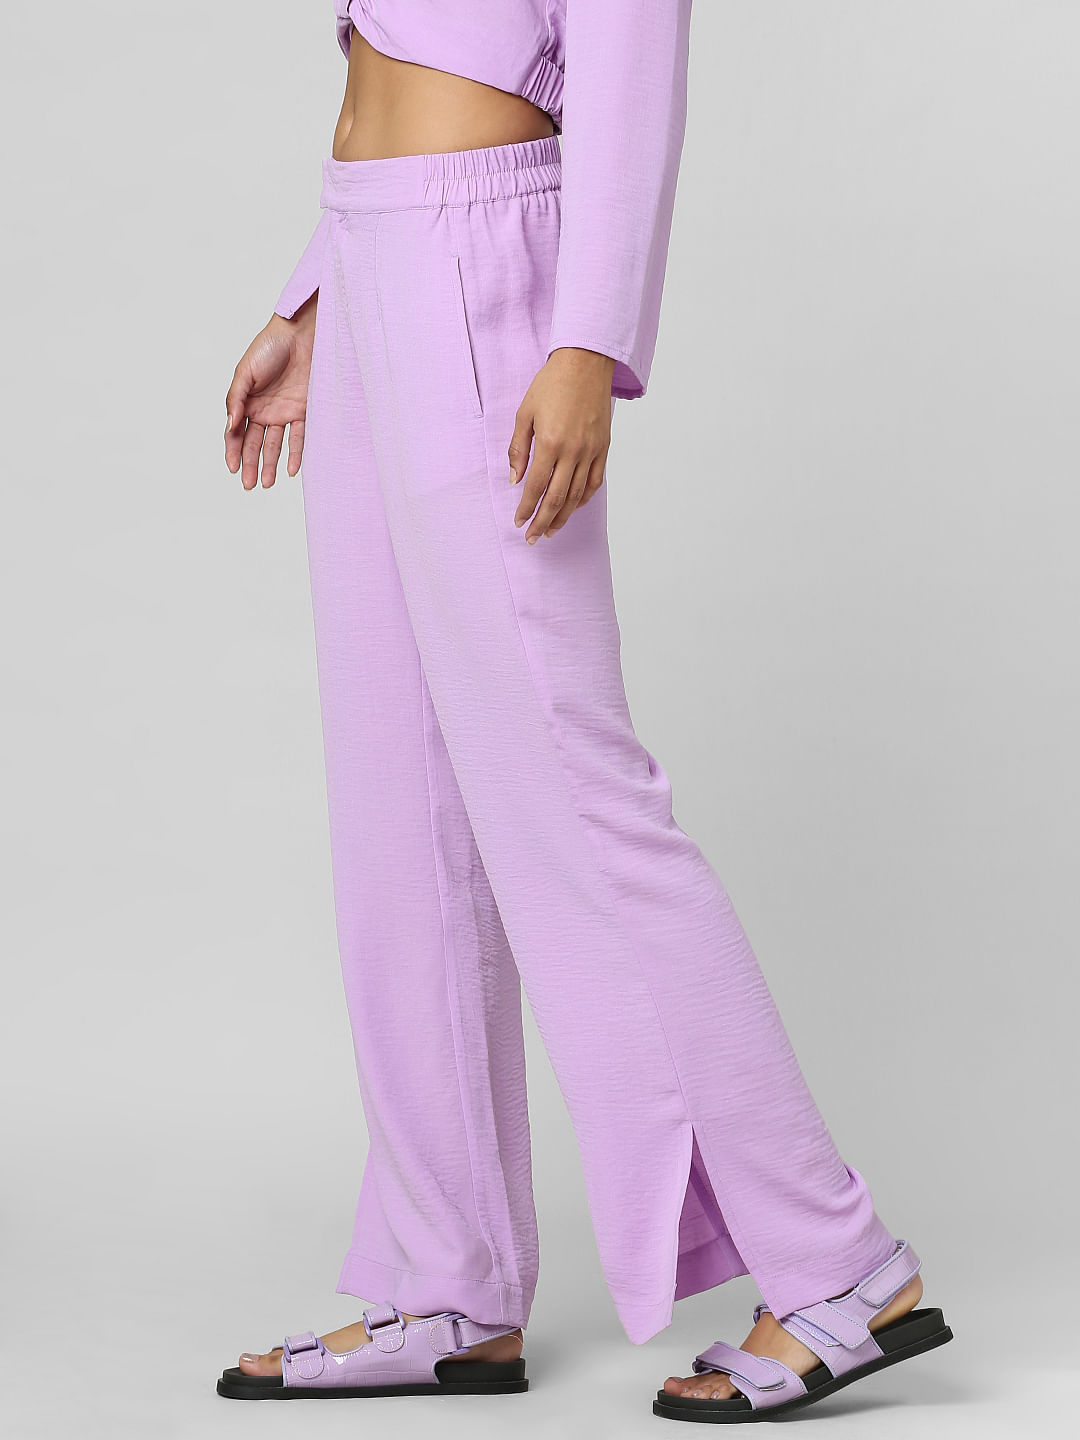 Zara Lilac Pleated Wide Leg Palazzo Trousers Pants Size XS  eBay